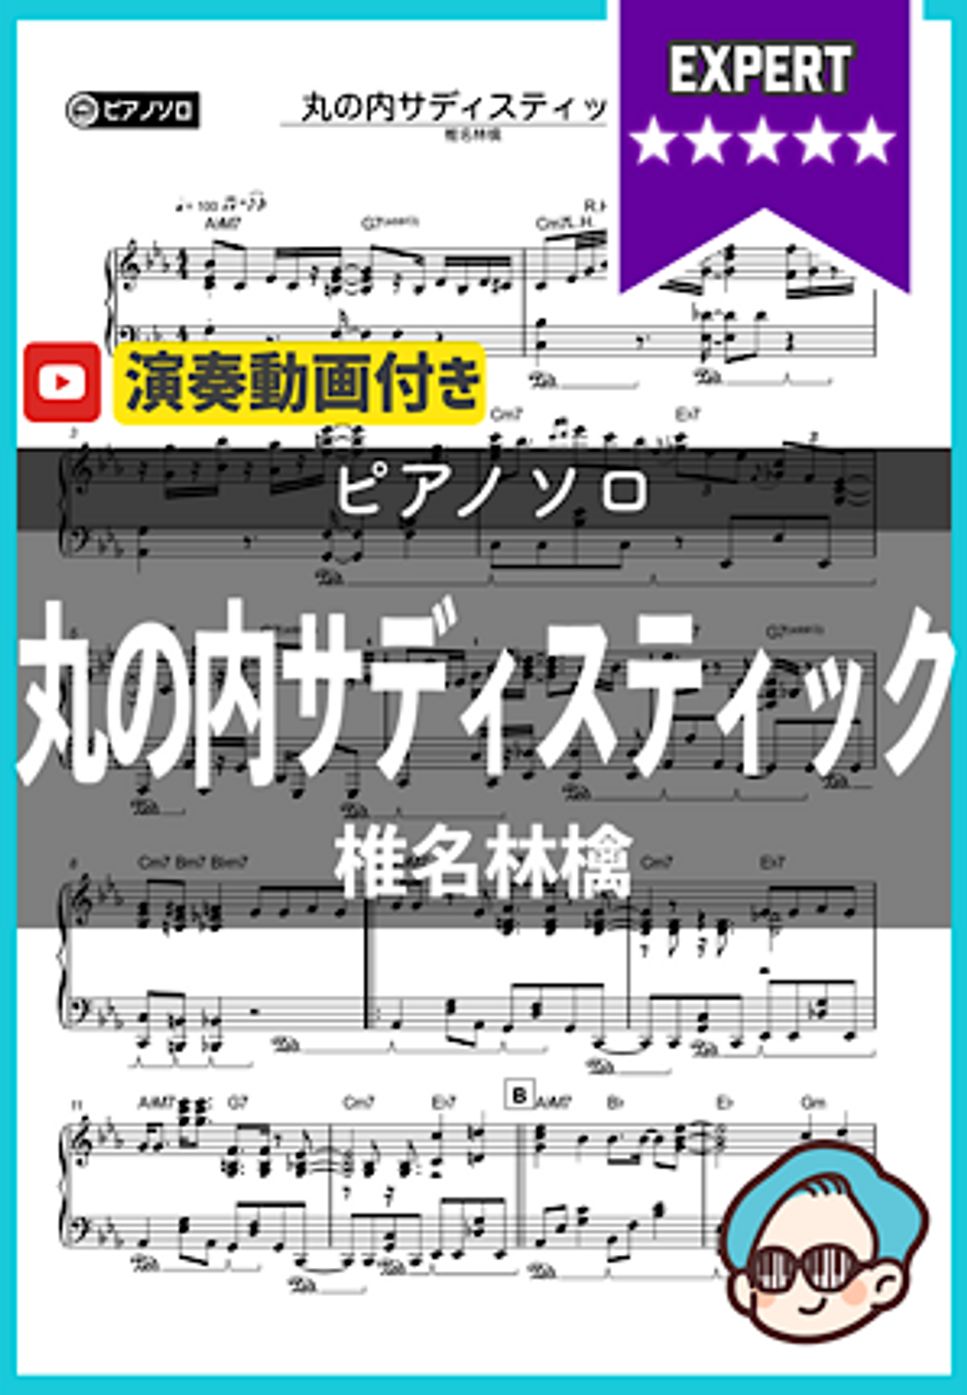 椎名林檎 - 丸の内サディスティック by シータピアノ